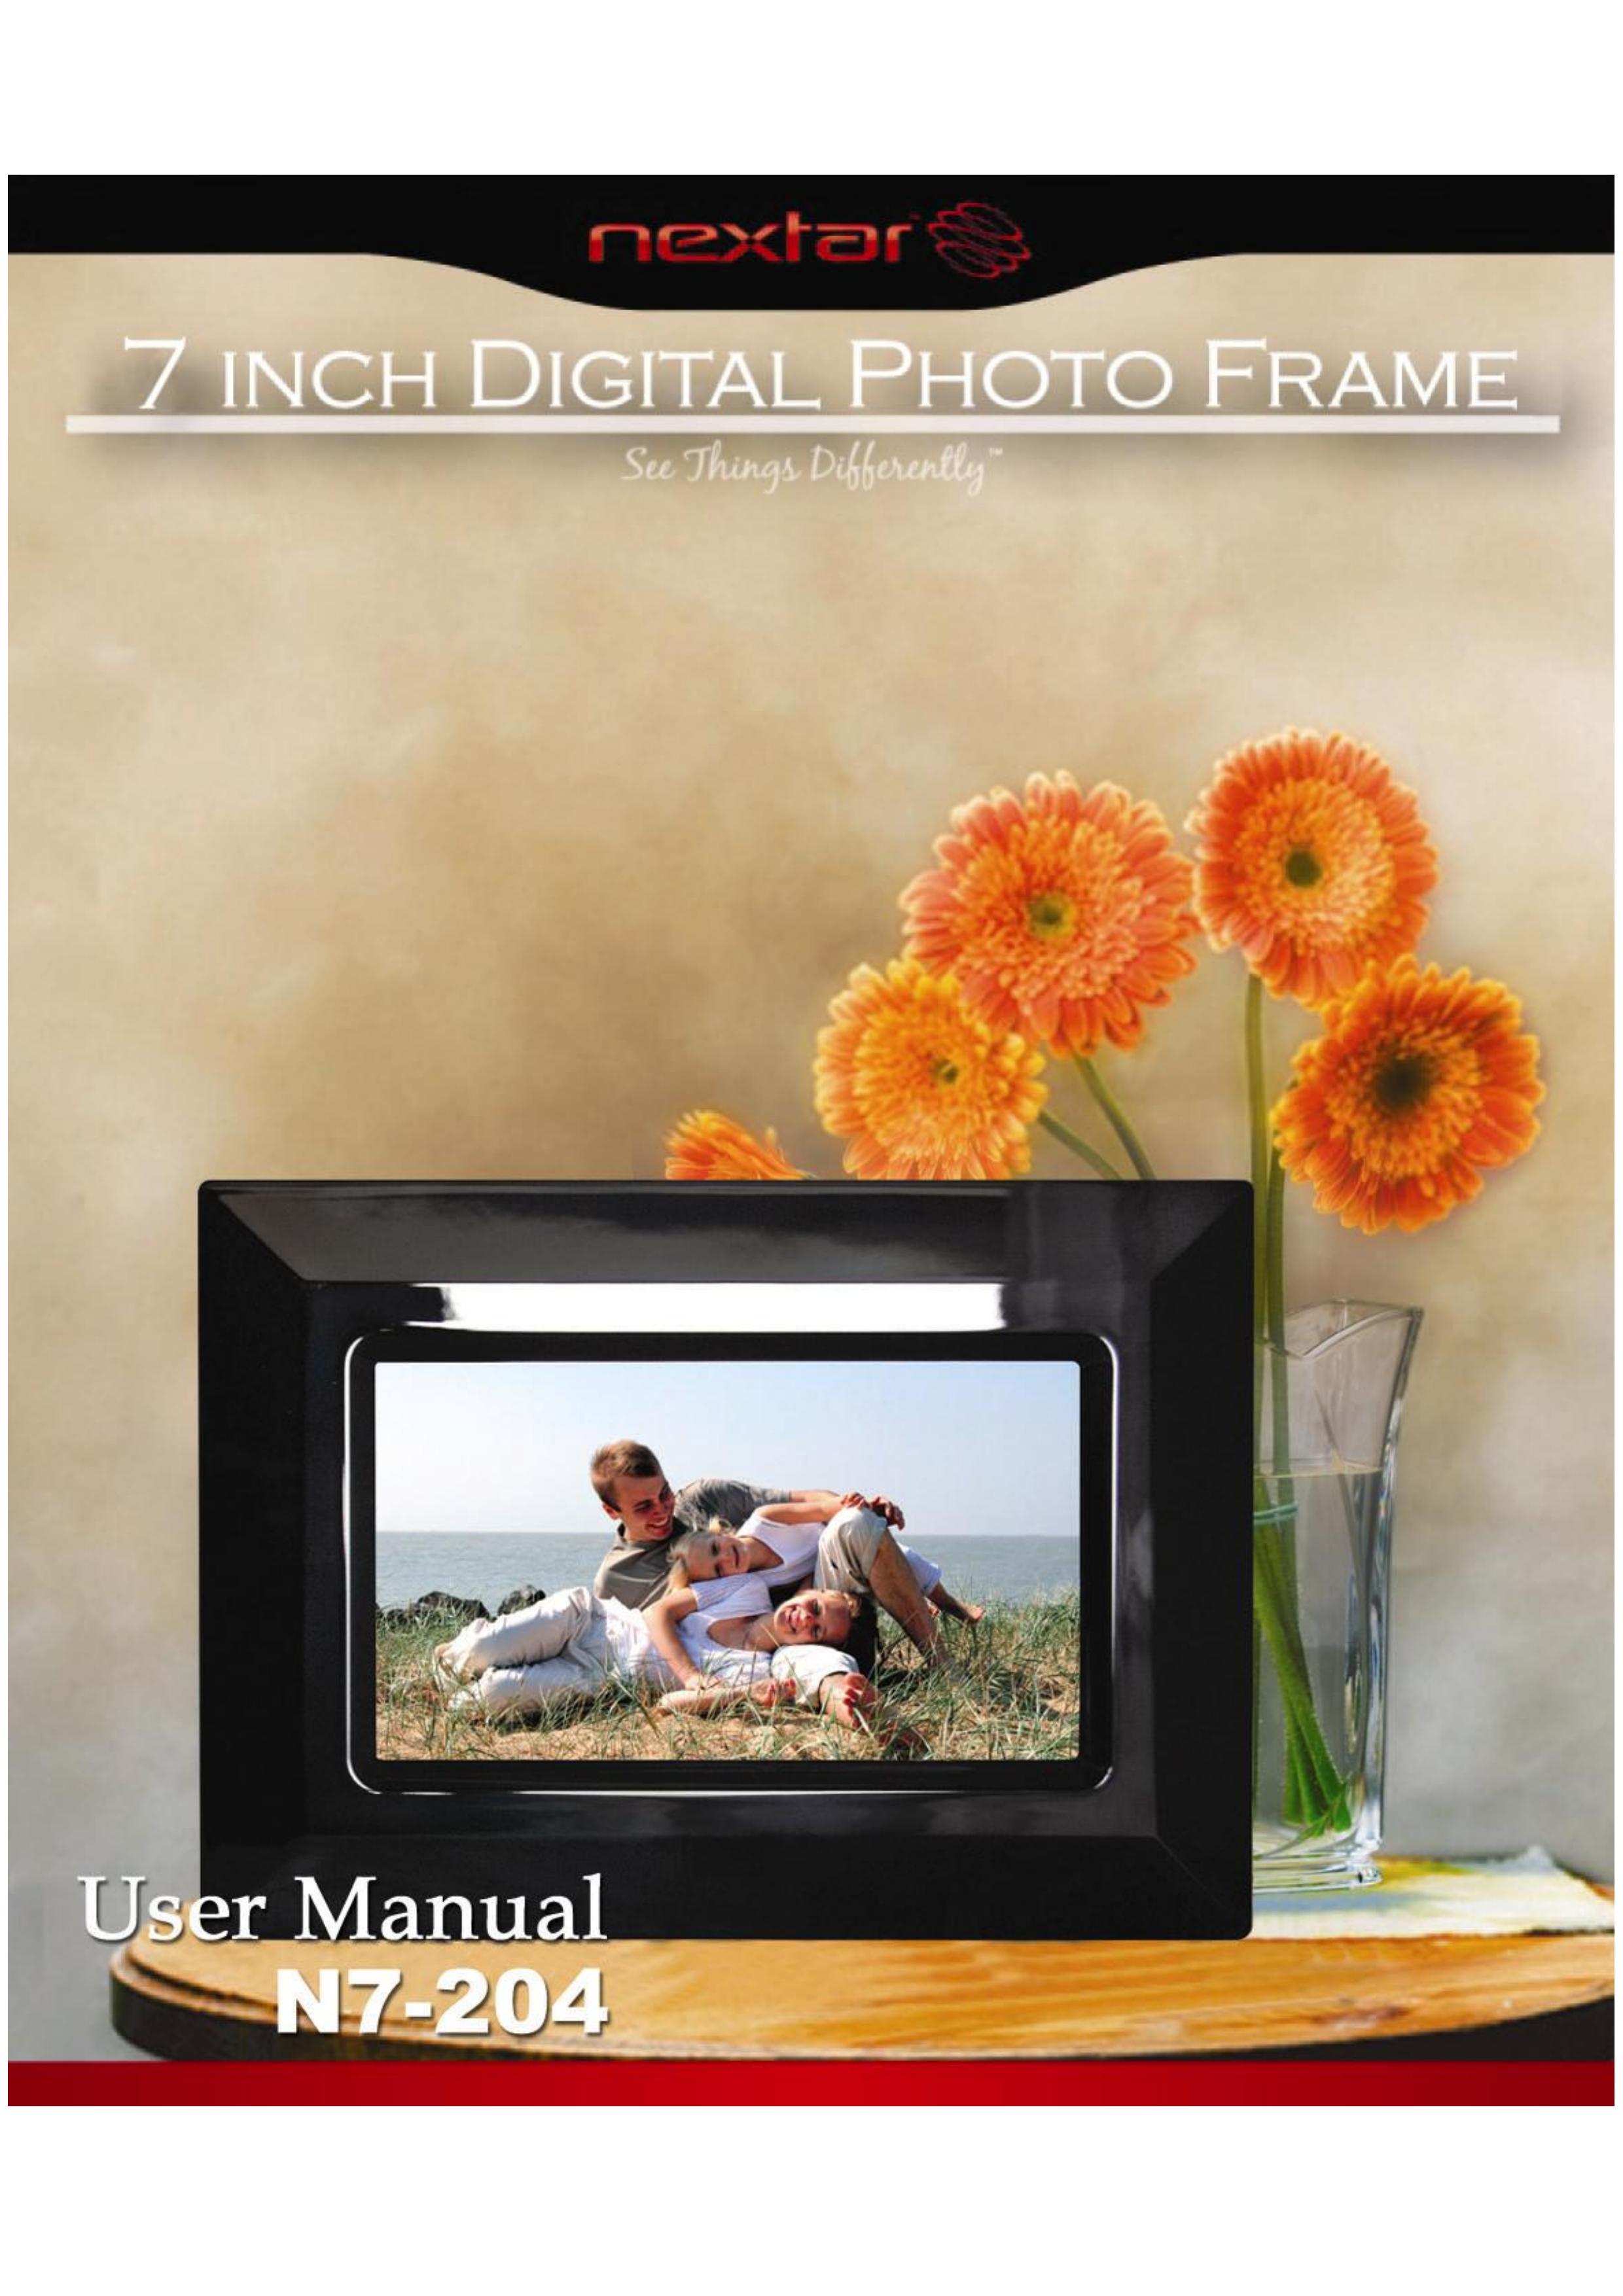 Nextar N7-204 Digital Photo Frame User Manual